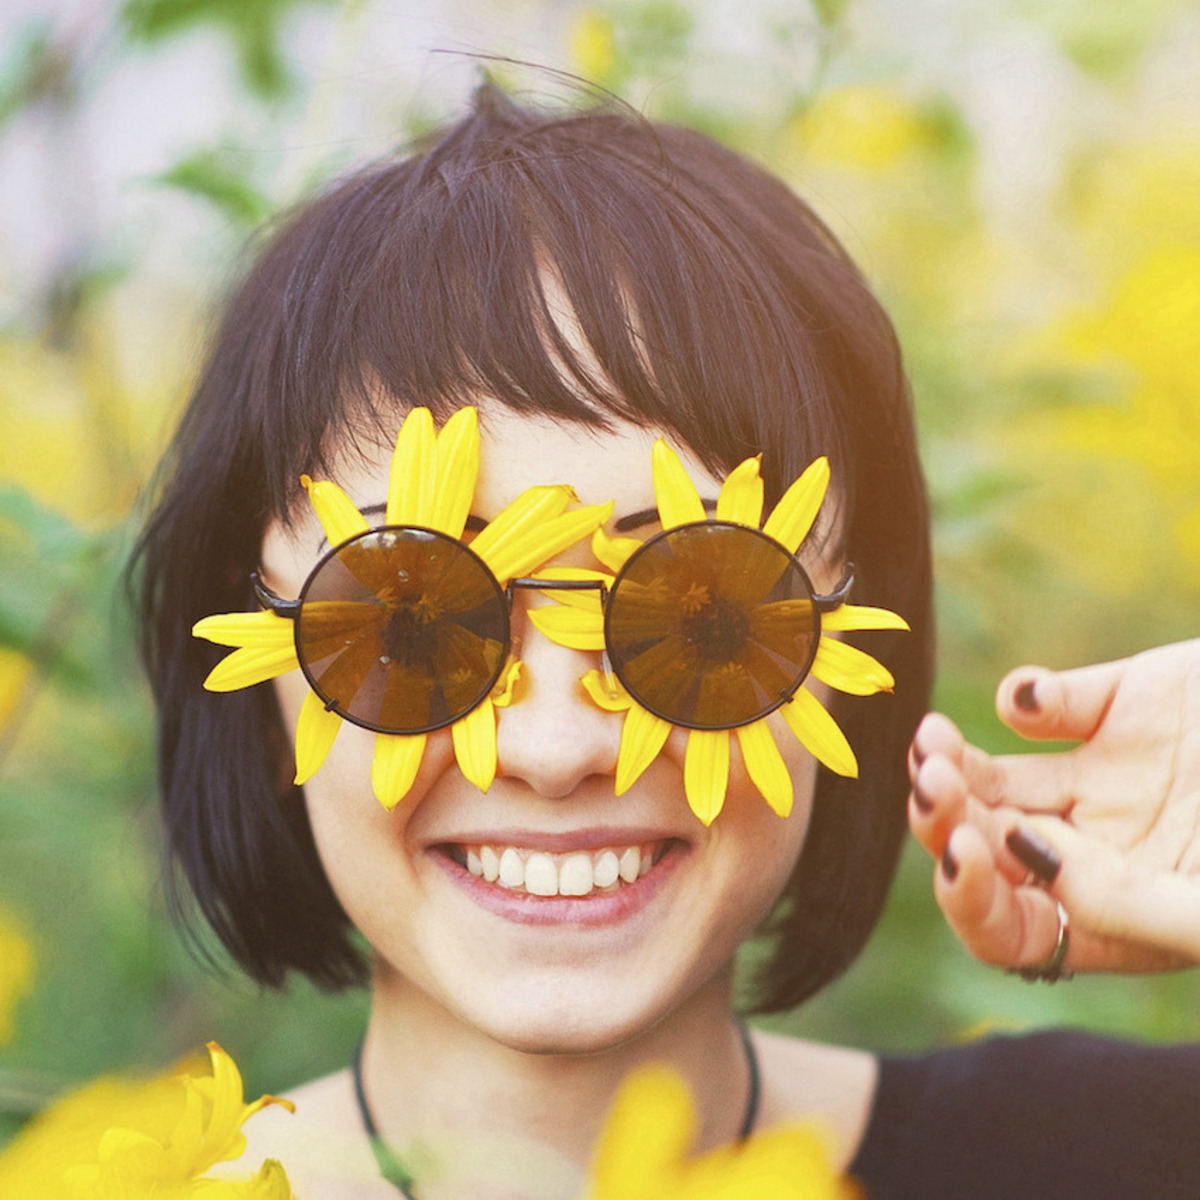 Eine Frau steht in einem Feld gelber Blumen, auch unter ihrer Sonnenbrille befinden sich zwei gelbe Blüten; sie lächelt uns an.